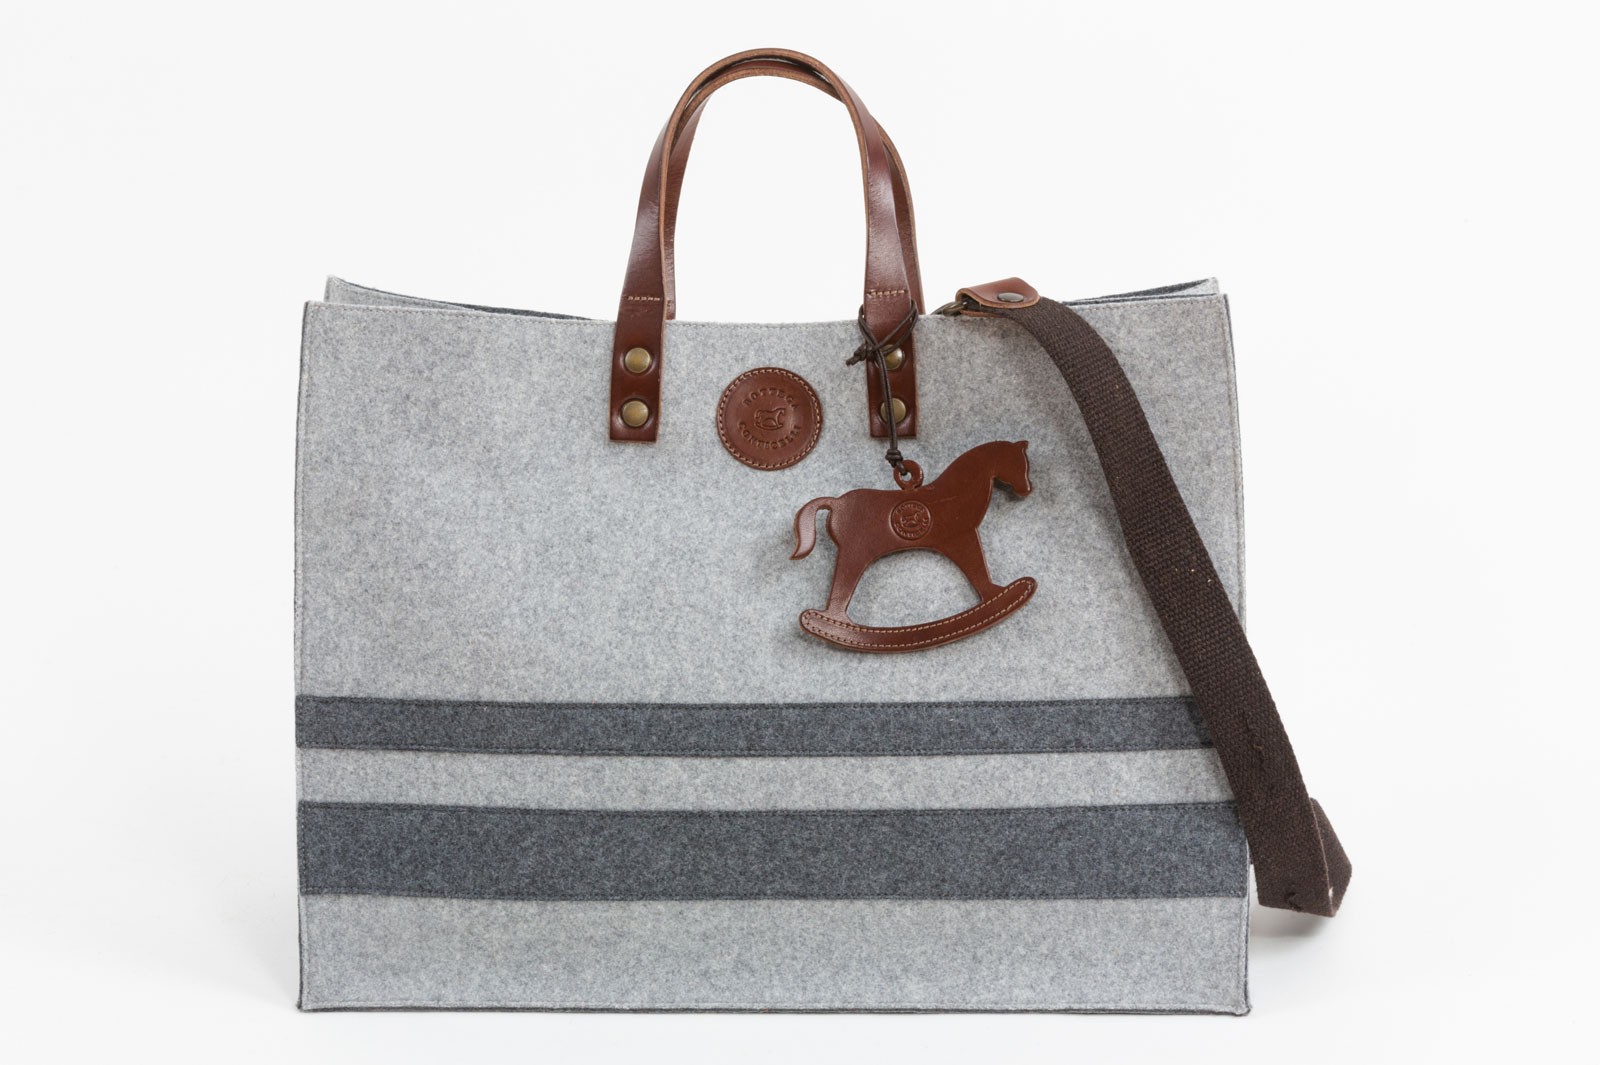 Frank Bag by Bottega Conticelli, borsa in cuoio disponibile in diverse colorazioni